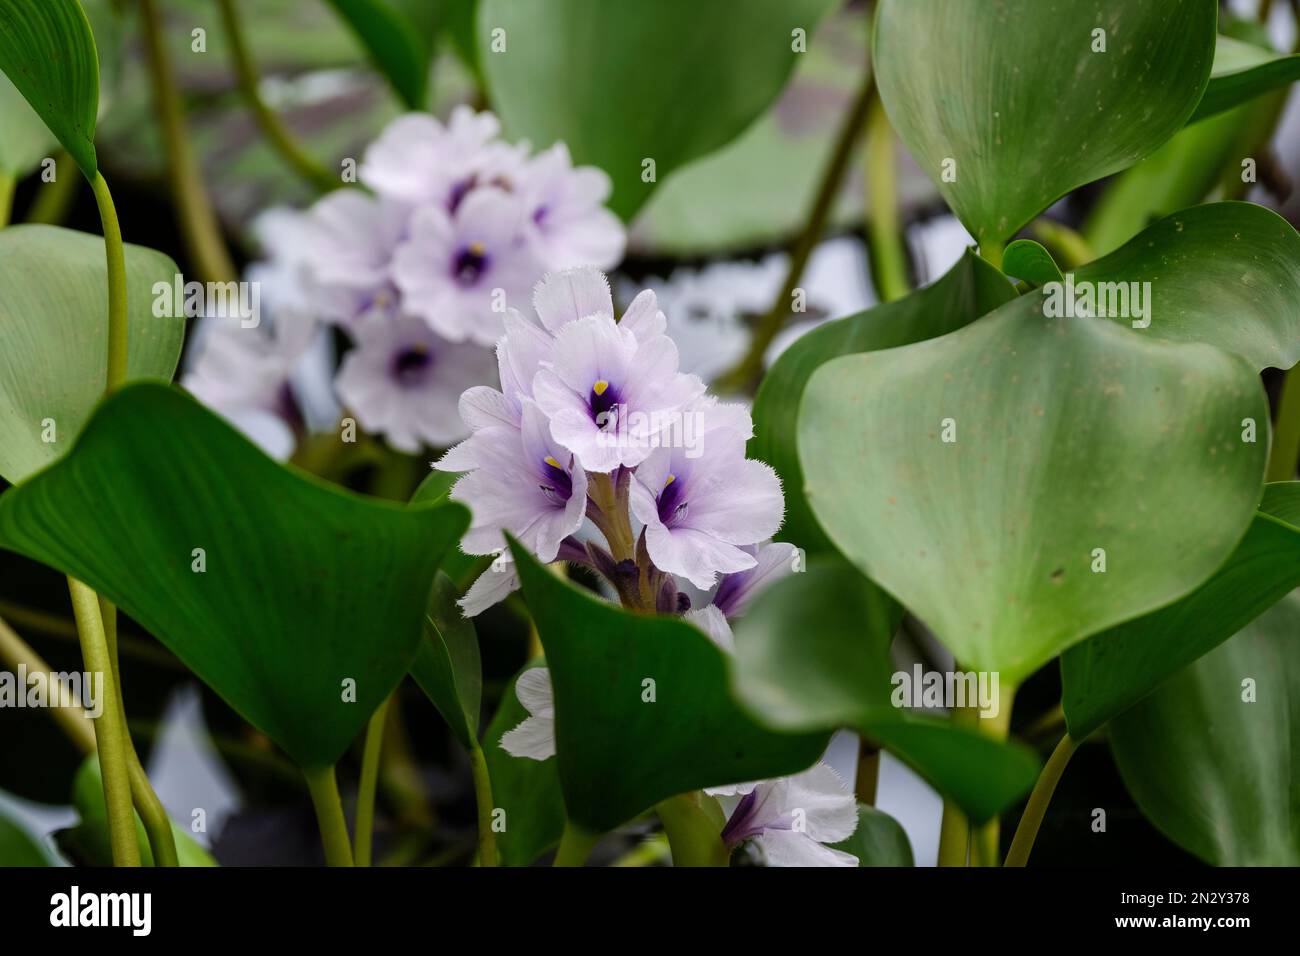 Eichhornia azurea, jacinthe d'eau ancrée, flottant ou submergé, aquatique vivace, fleurs bleu pâle avec des gorges à pois jaunes et violet foncé Banque D'Images